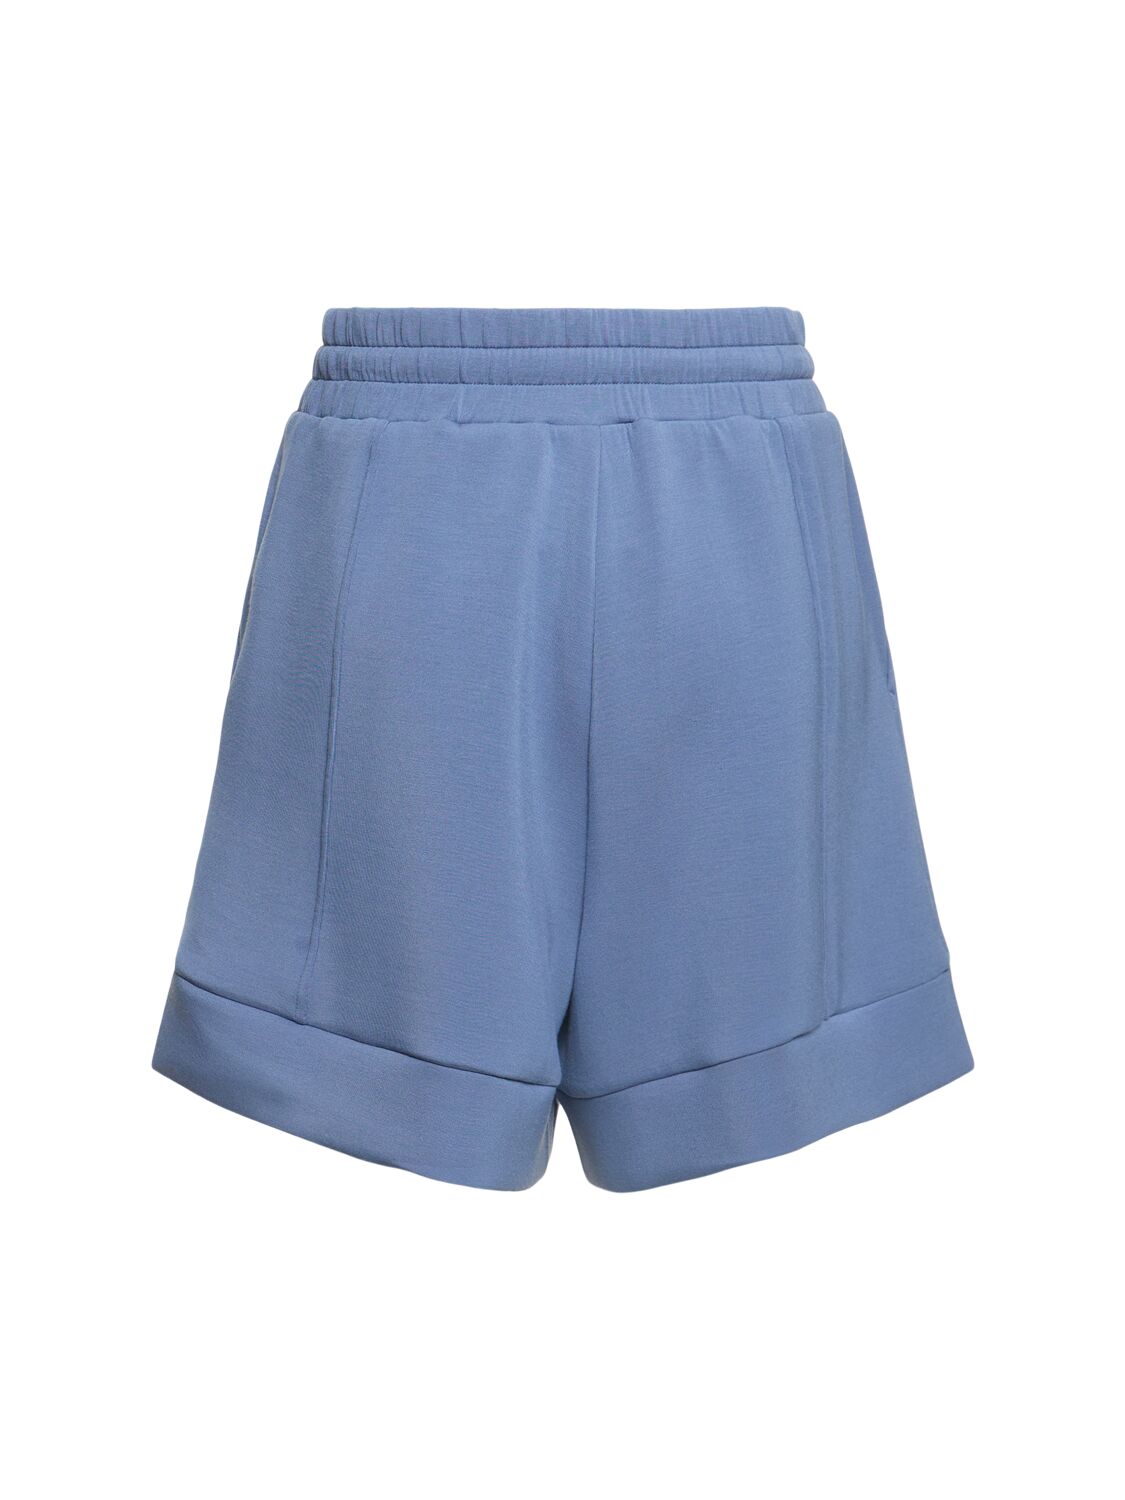 Shop Varley Adler Shorts In Light Blue